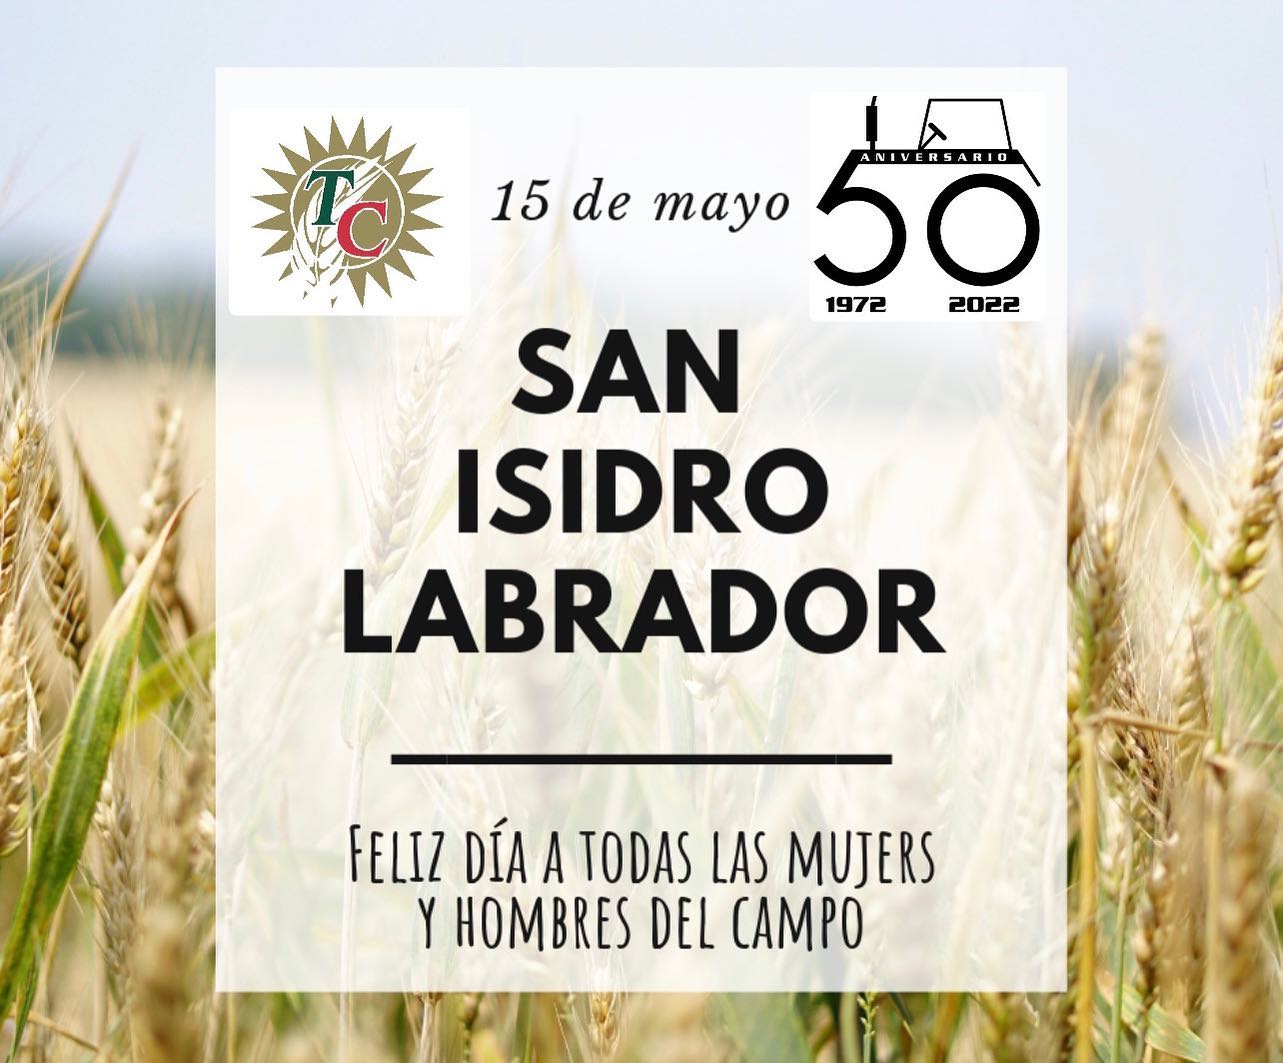 Desde Talleres Casares os deseamos un Feliz día de San Isidro Labrador